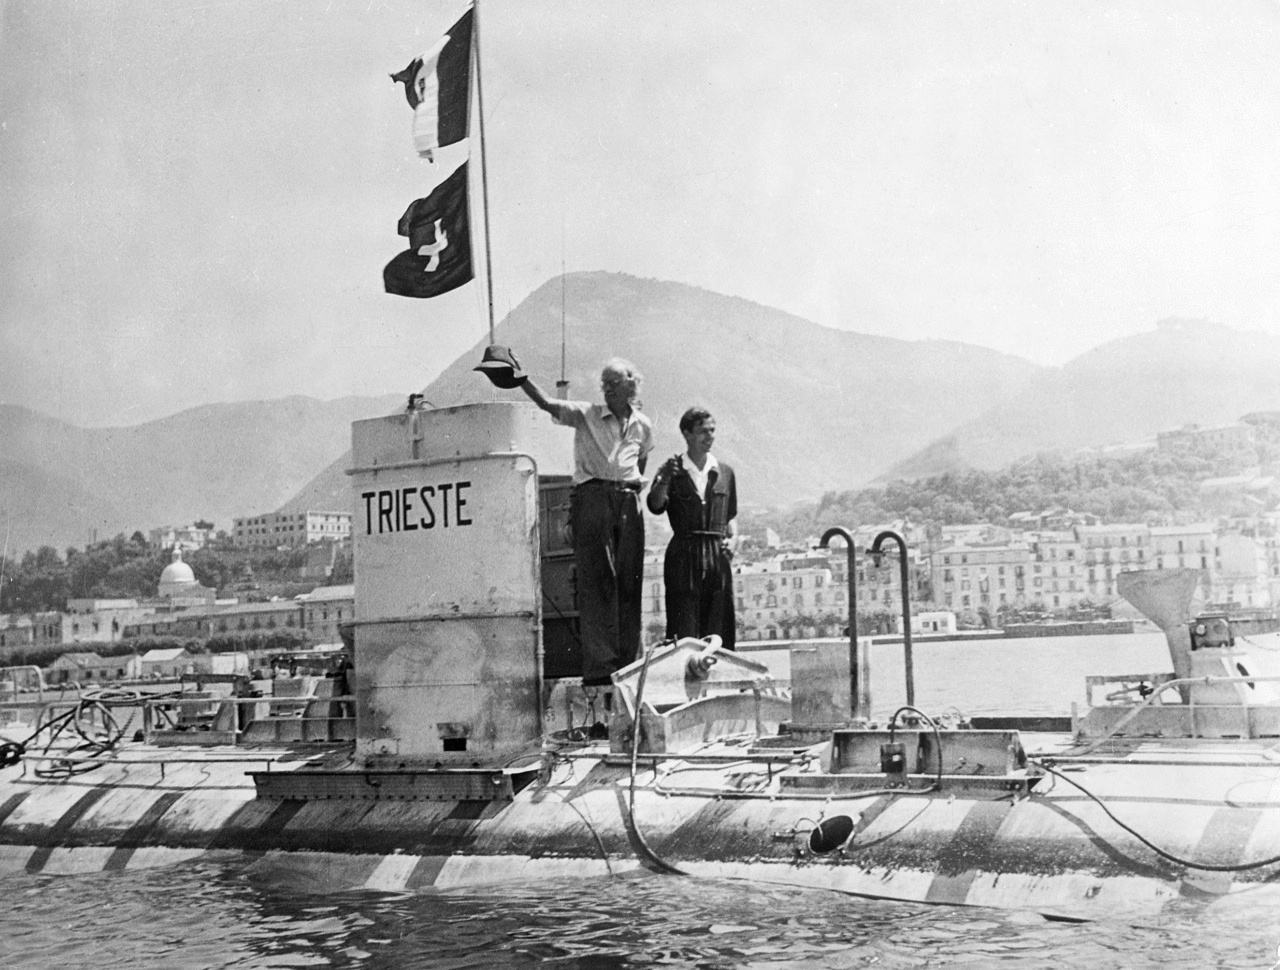 Il batiscafo Trieste non tornerà in patria. Ma s'ipotizza una